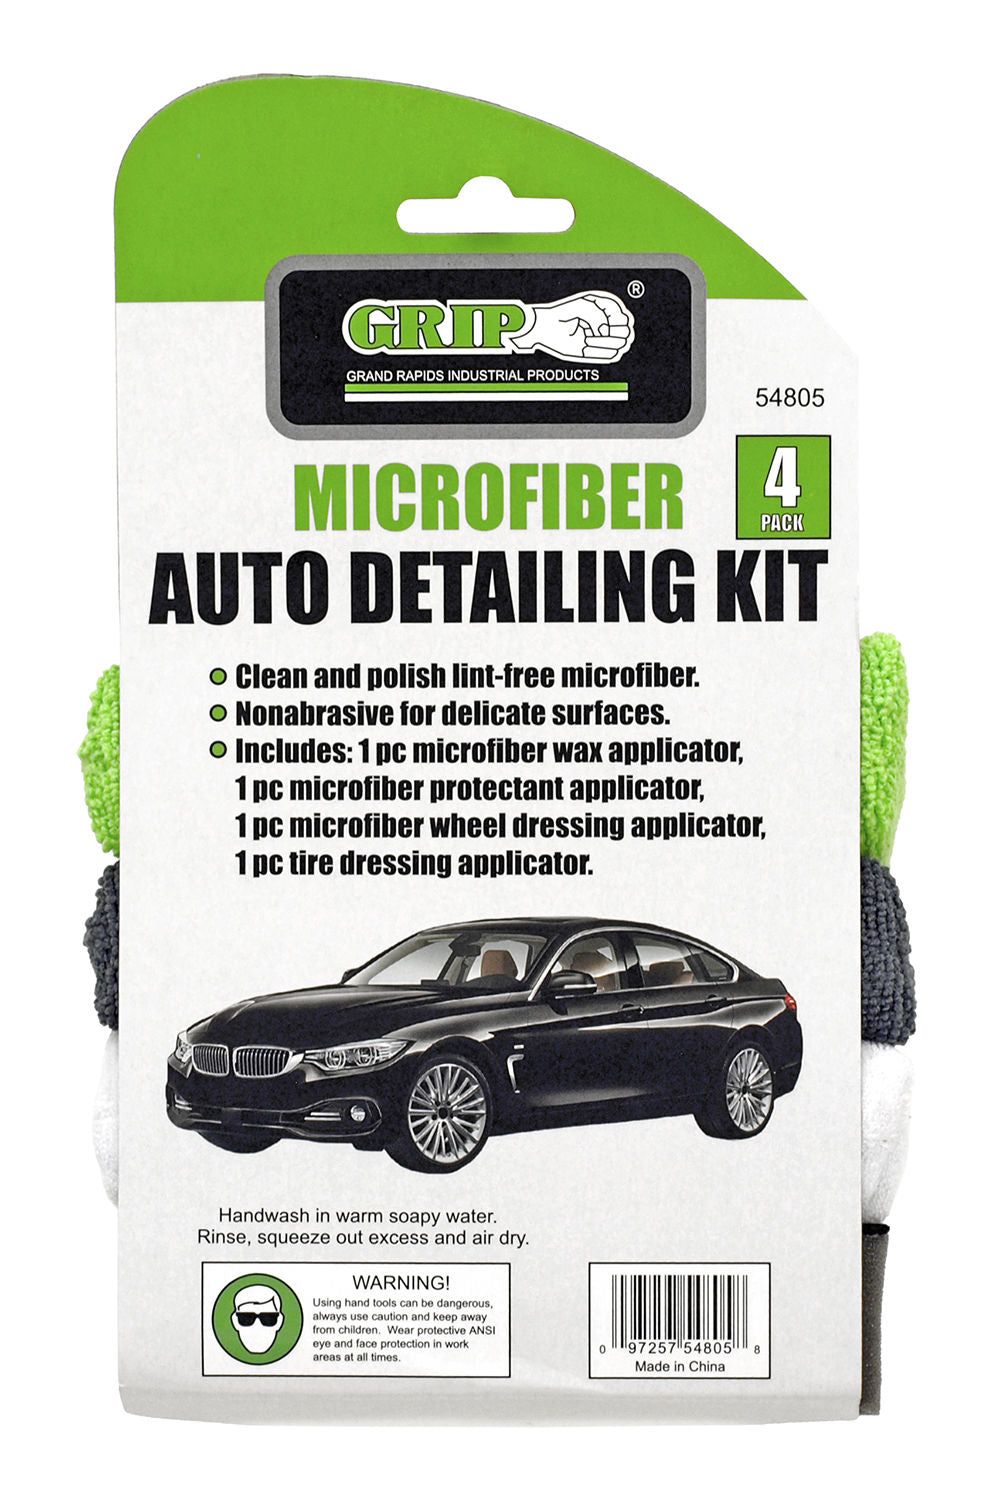 Microfiber Auto Detailing Kit - 4 Pieces